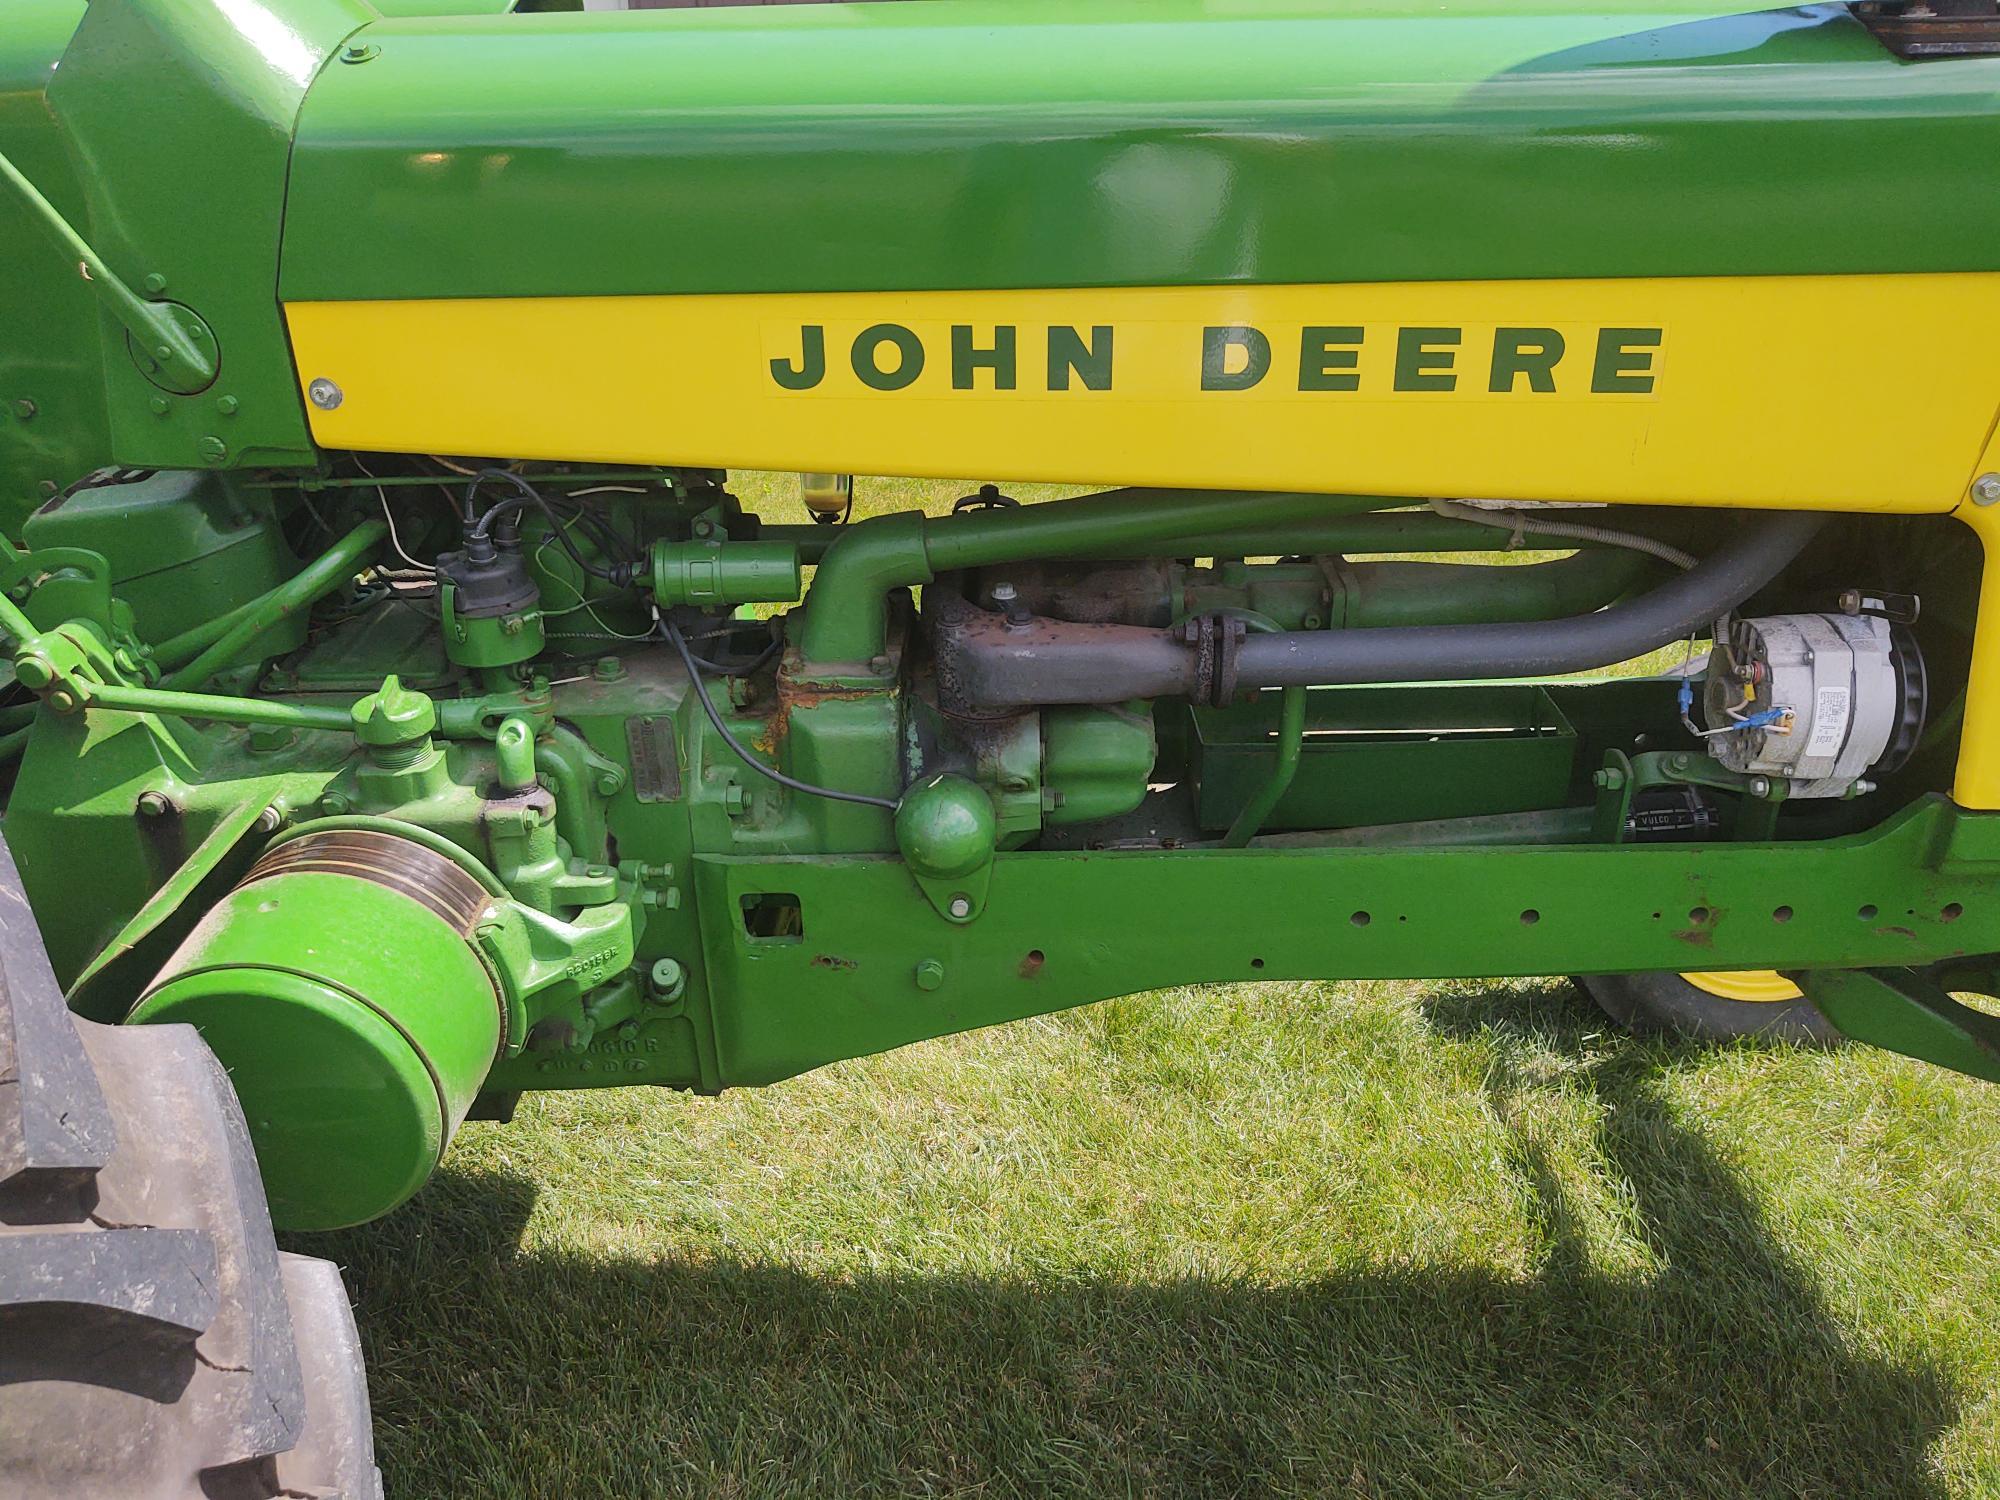 John Deere 530 Tractor (QEA 6778)